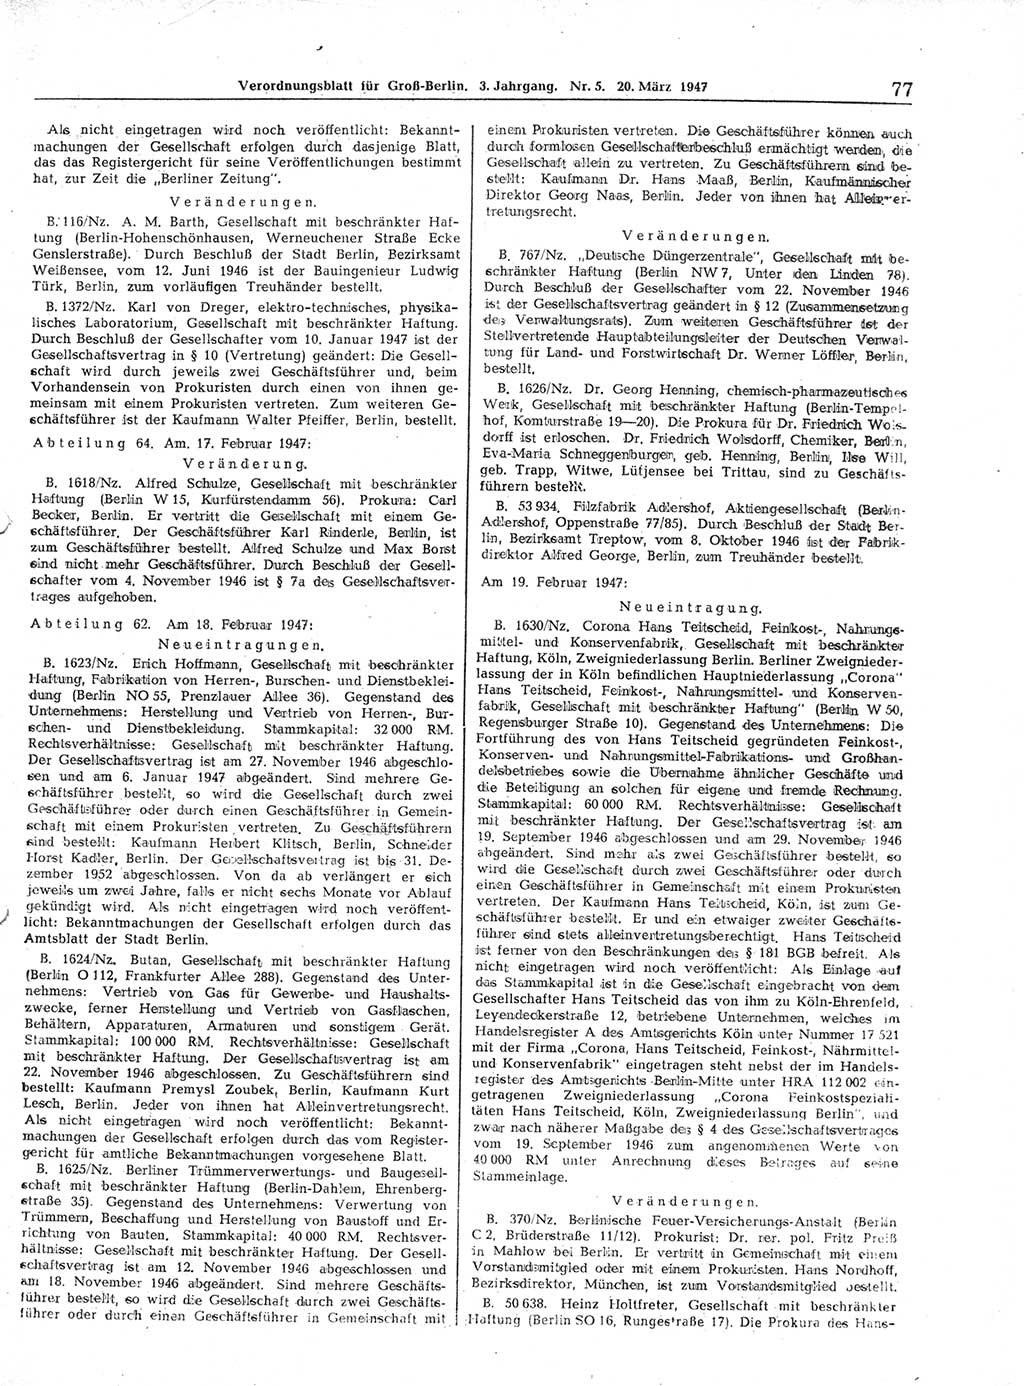 Verordnungsblatt (VOBl.) für Groß-Berlin 1947, Seite 77 (VOBl. Bln. 1947, S. 77)